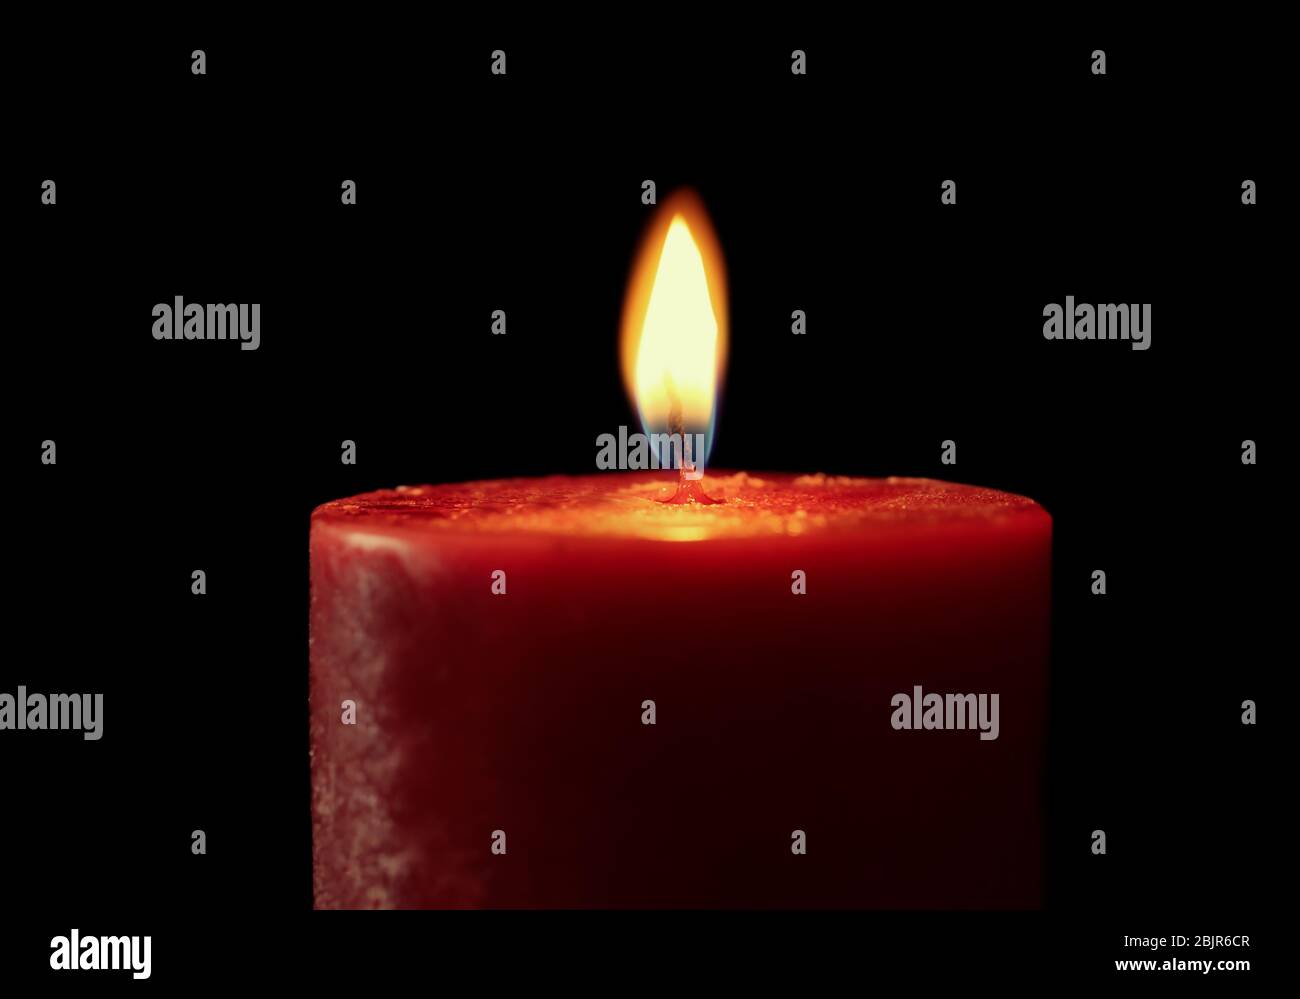 Burning candle on black background, closeup Stock Photo